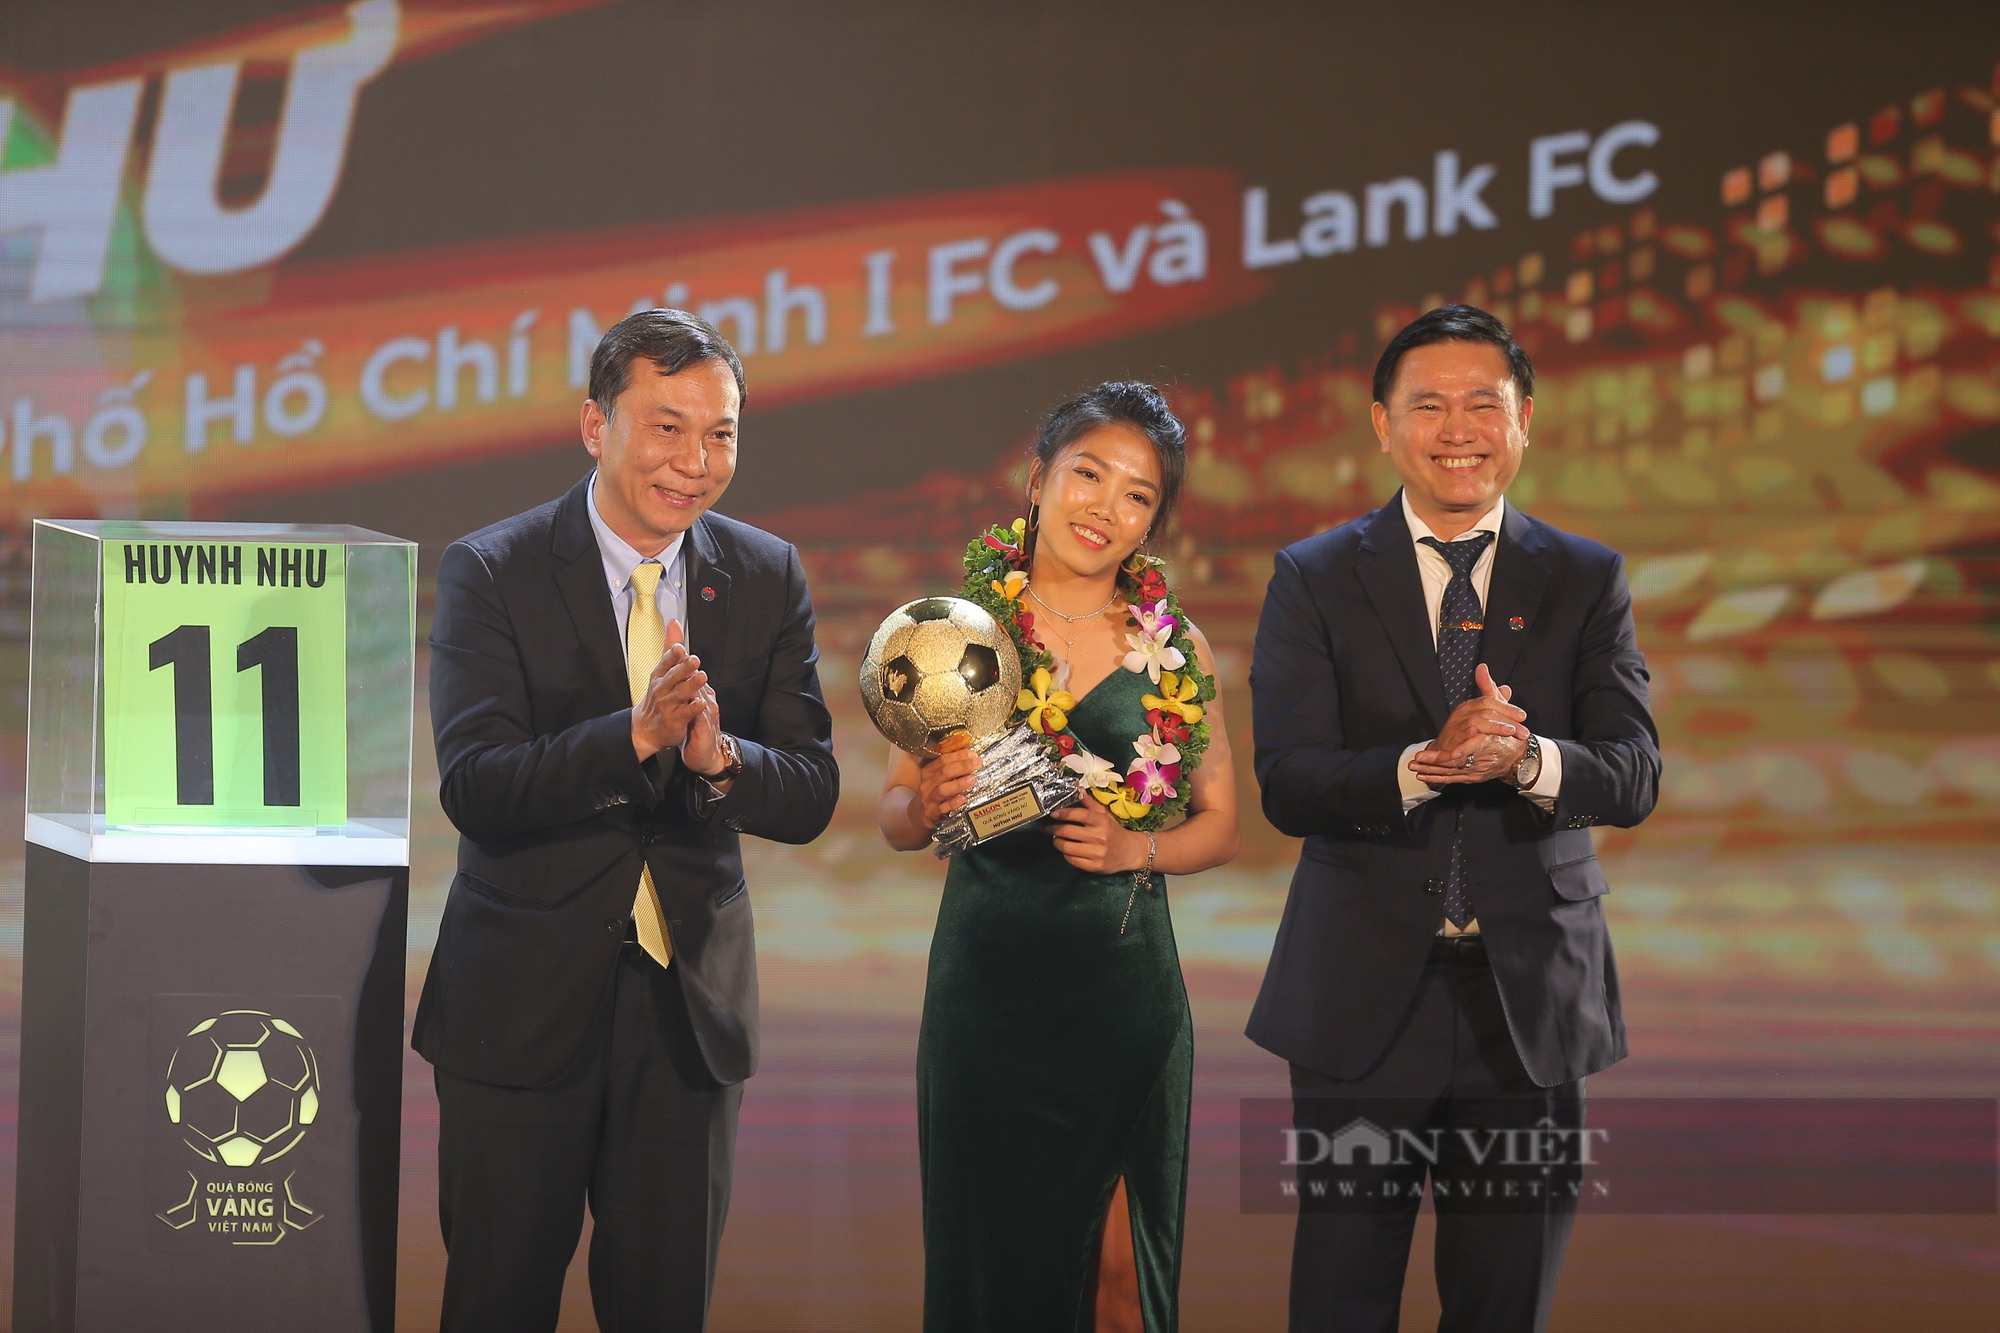 Huỳnh Như: &quot;Các đồng đội ở Lank FC cũng cầu nguyện tôi giành Quả bóng vàng&quot; - Ảnh 1.